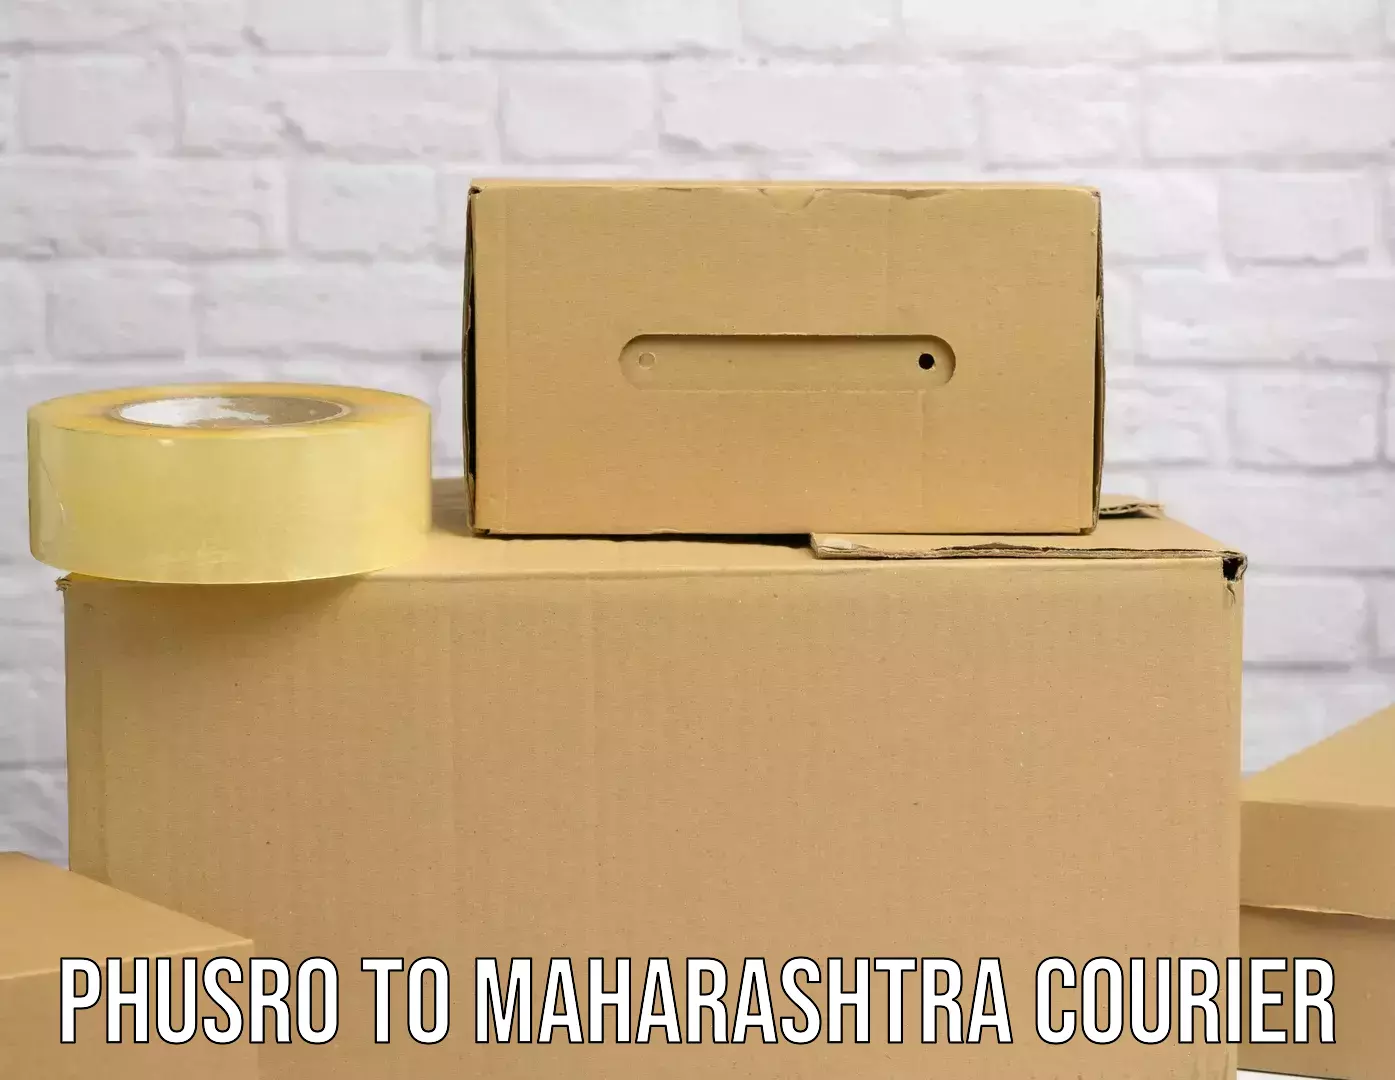 Supply chain delivery Phusro to Maharashtra